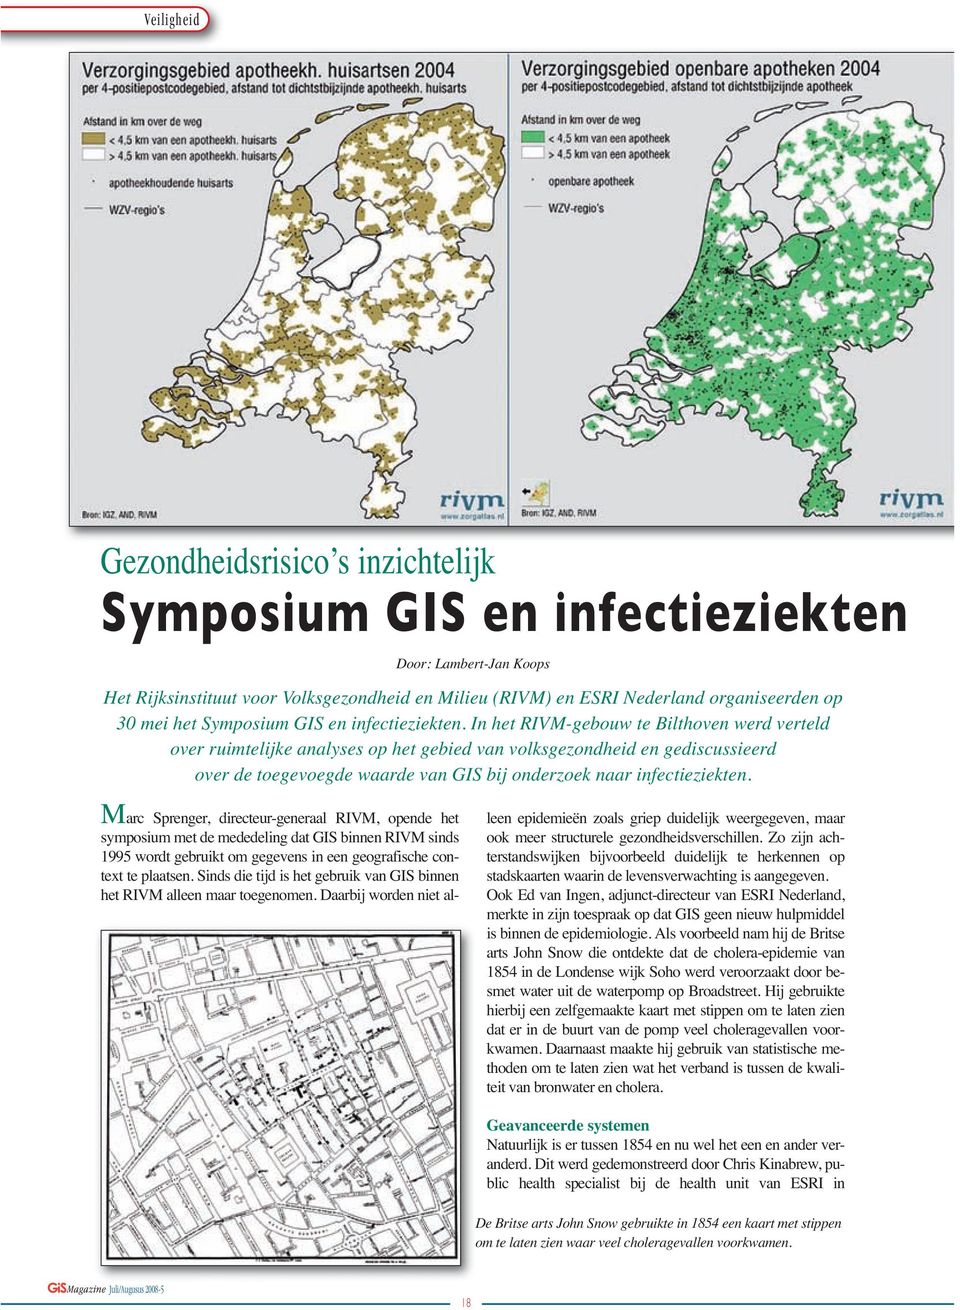 In het RIVM-gebouw te Bilthoven werd verteld over ruimtelijke analyses op het gebied van volksgezondheid en gediscussieerd over de toegevoegde waarde van GIS bij onderzoek naar infectieziekten.